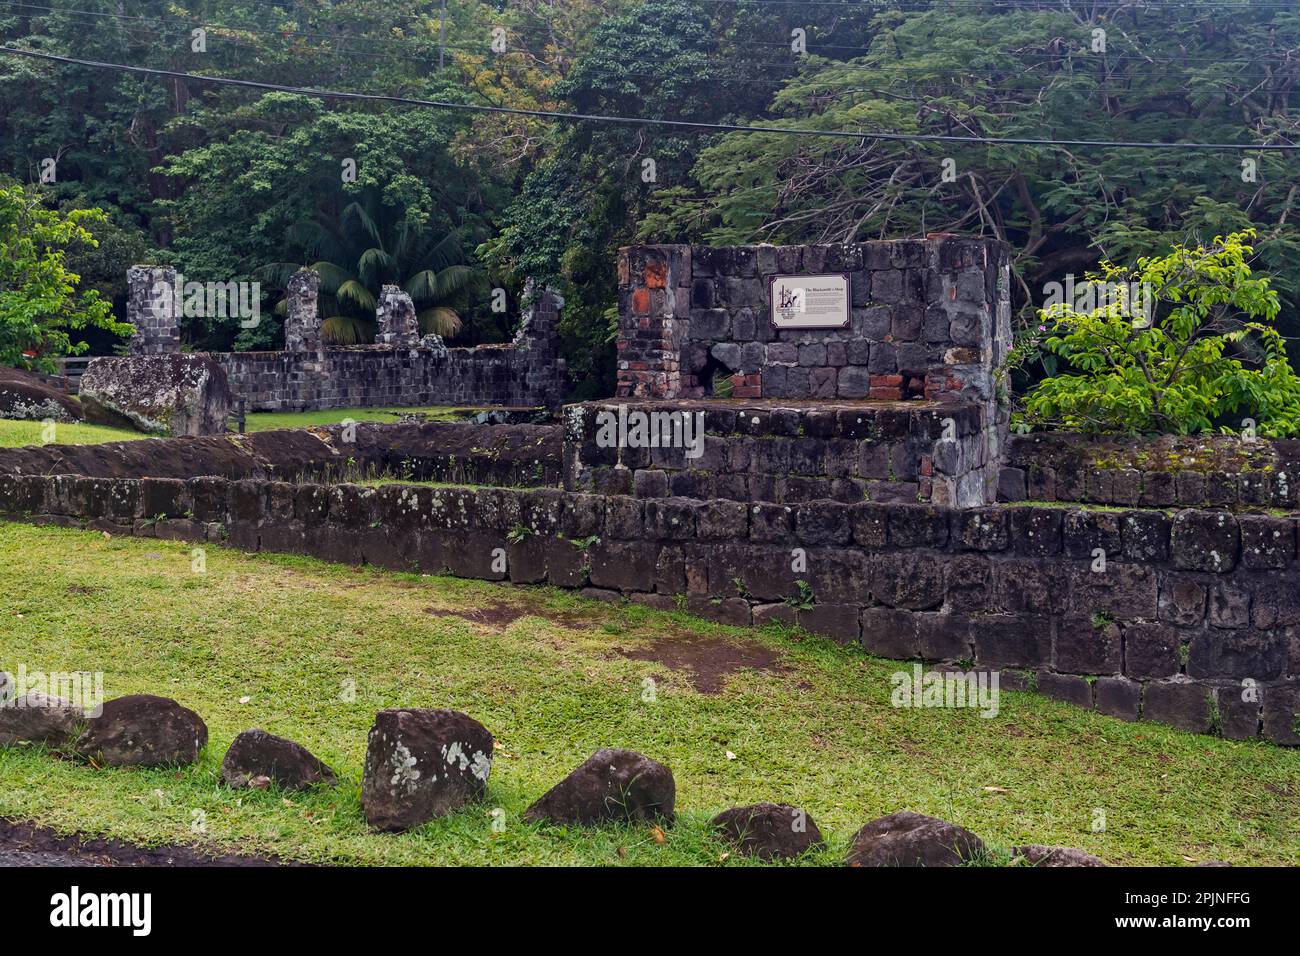 Ruines de la sugarfabrique le domaine de Wingfield, Romney Manor, St. Kitts, Caraïbes Banque D'Images